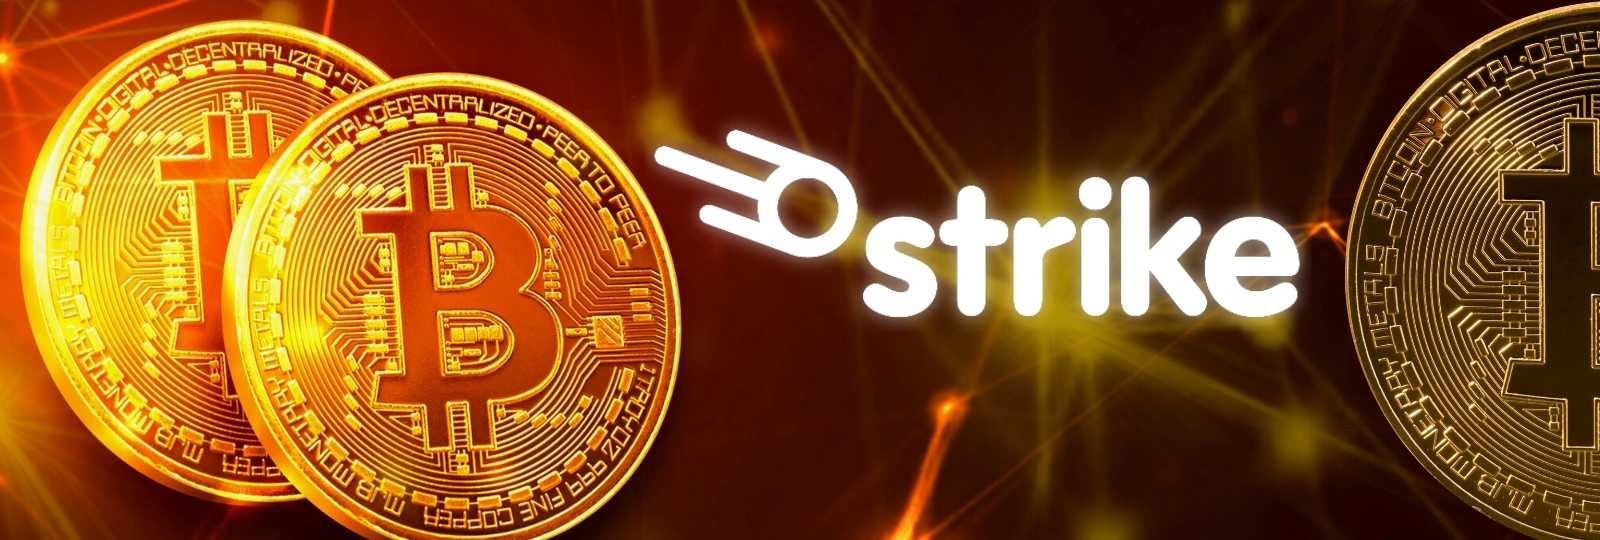 Strike anuncia integração com a Shopify para aprimorar os pagamentos de Bitcoin via Lightning Network, apostando em inclusão financeira